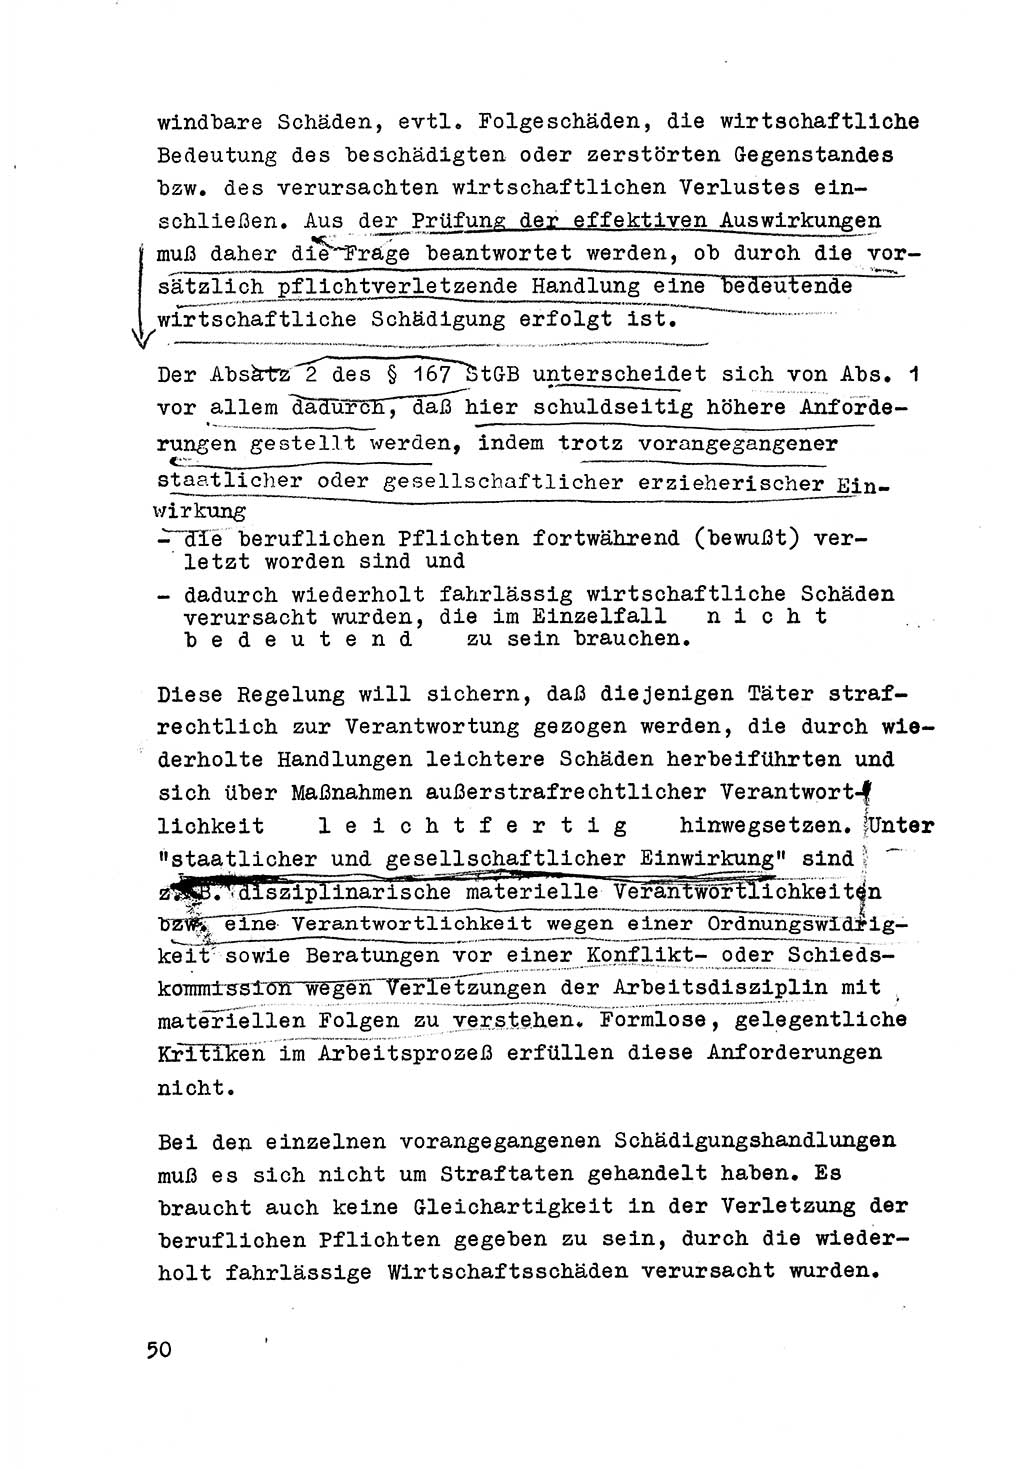 Strafrecht der DDR (Deutsche Demokratische Republik), Besonderer Teil, Lehrmaterial, Heft 6 1970, Seite 50 (Strafr. DDR BT Lehrmat. H. 6 1970, S. 50)